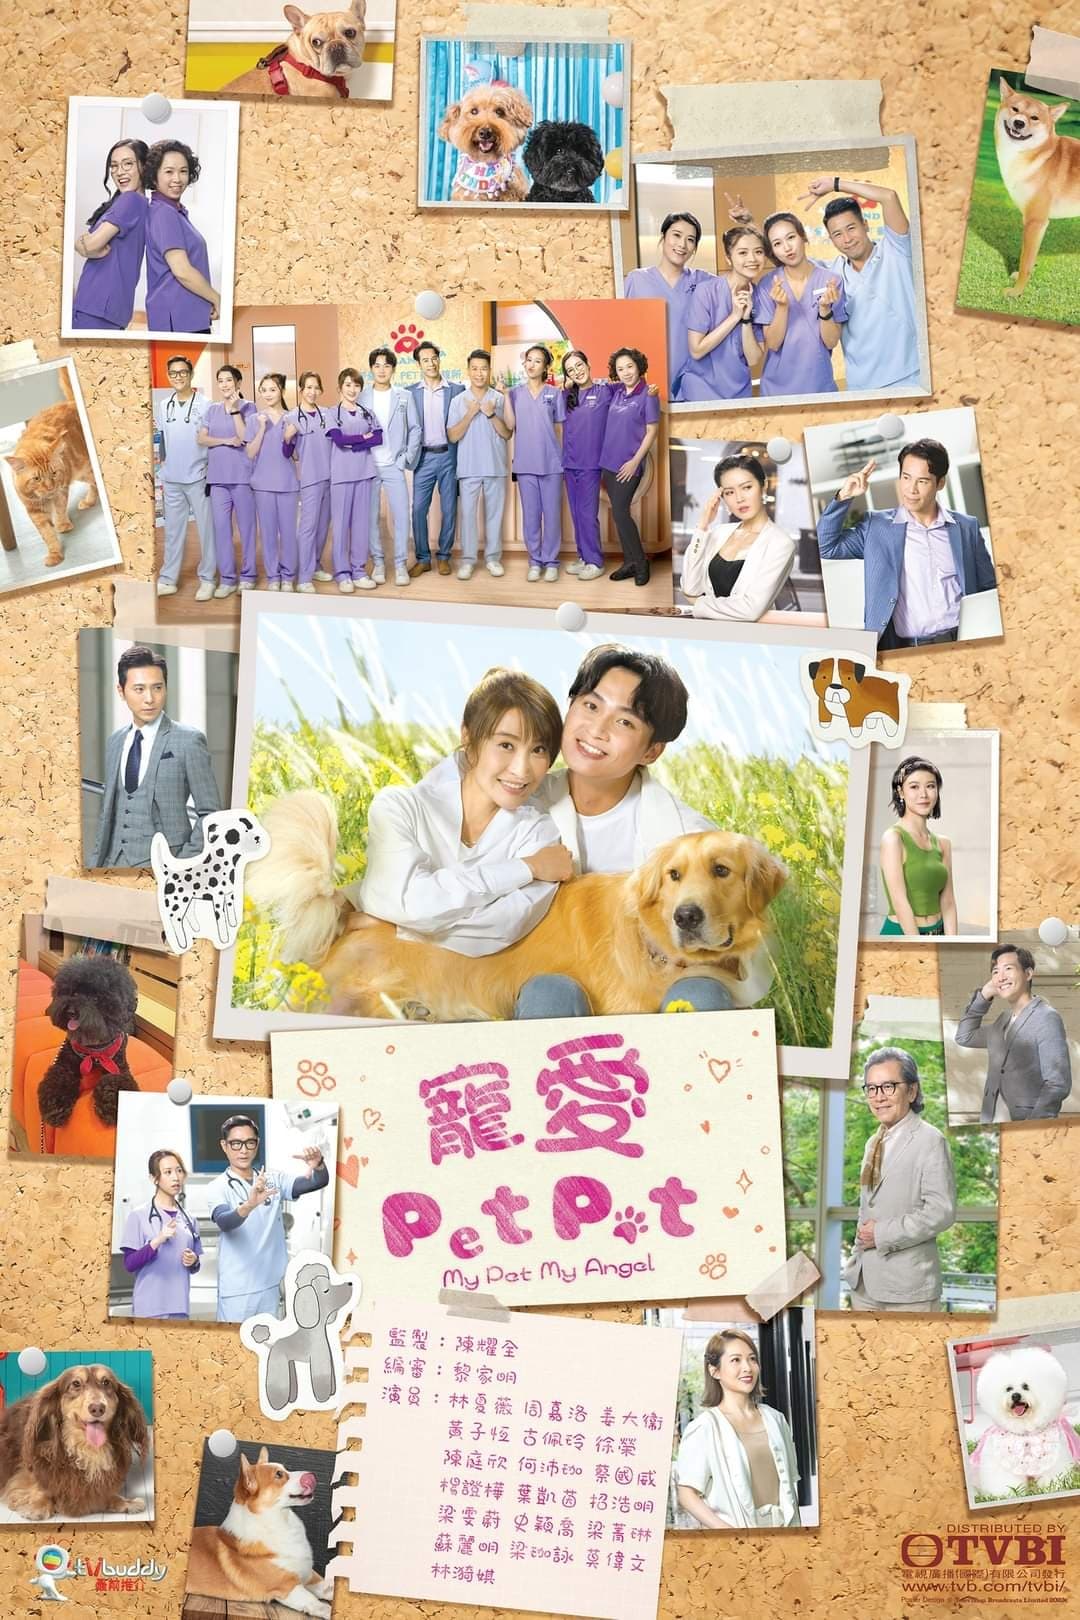 TV ratings for My Pet My Angel (寵愛Pet Pet) in South Korea. TVB Jade TV series